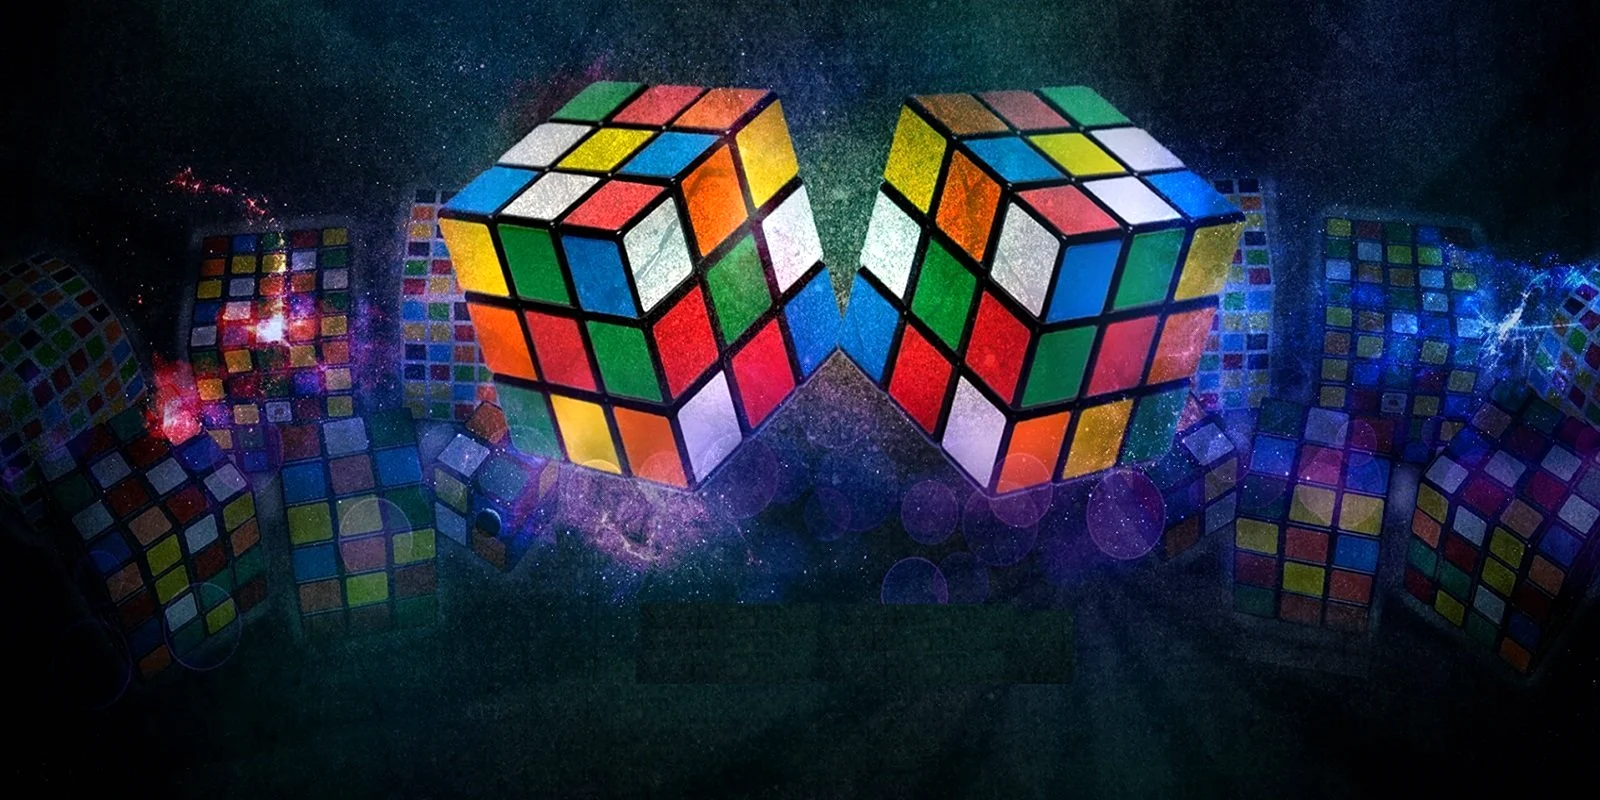 Кубик рубик 1000000x1000000